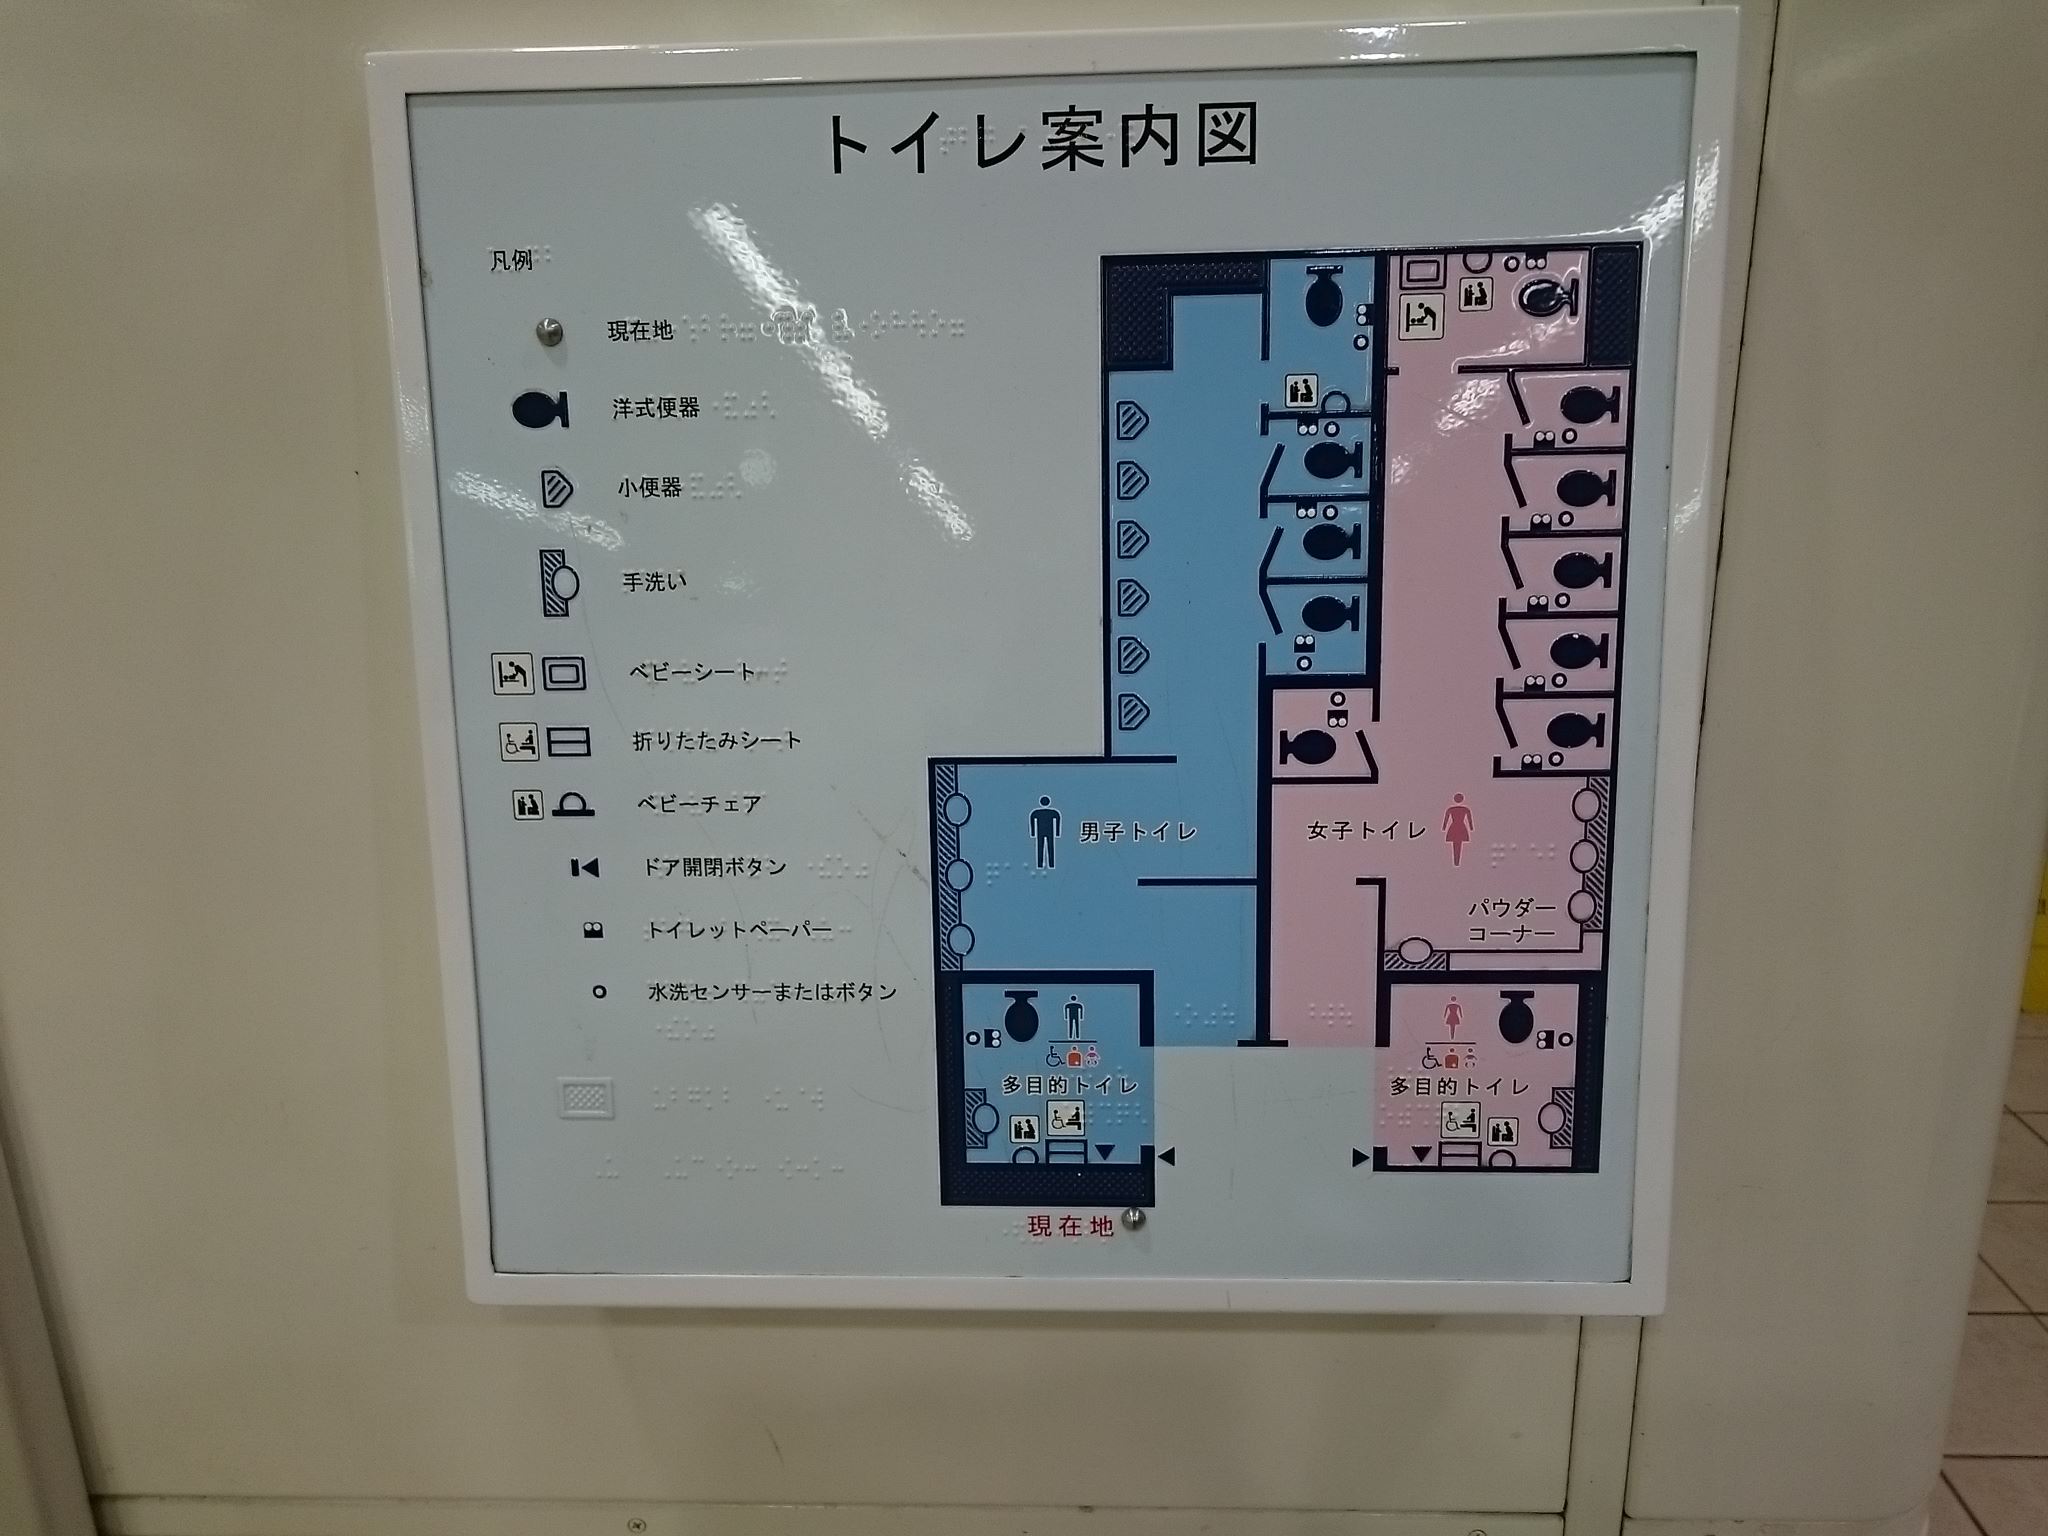 海老名駅(小田急) トイレペディア